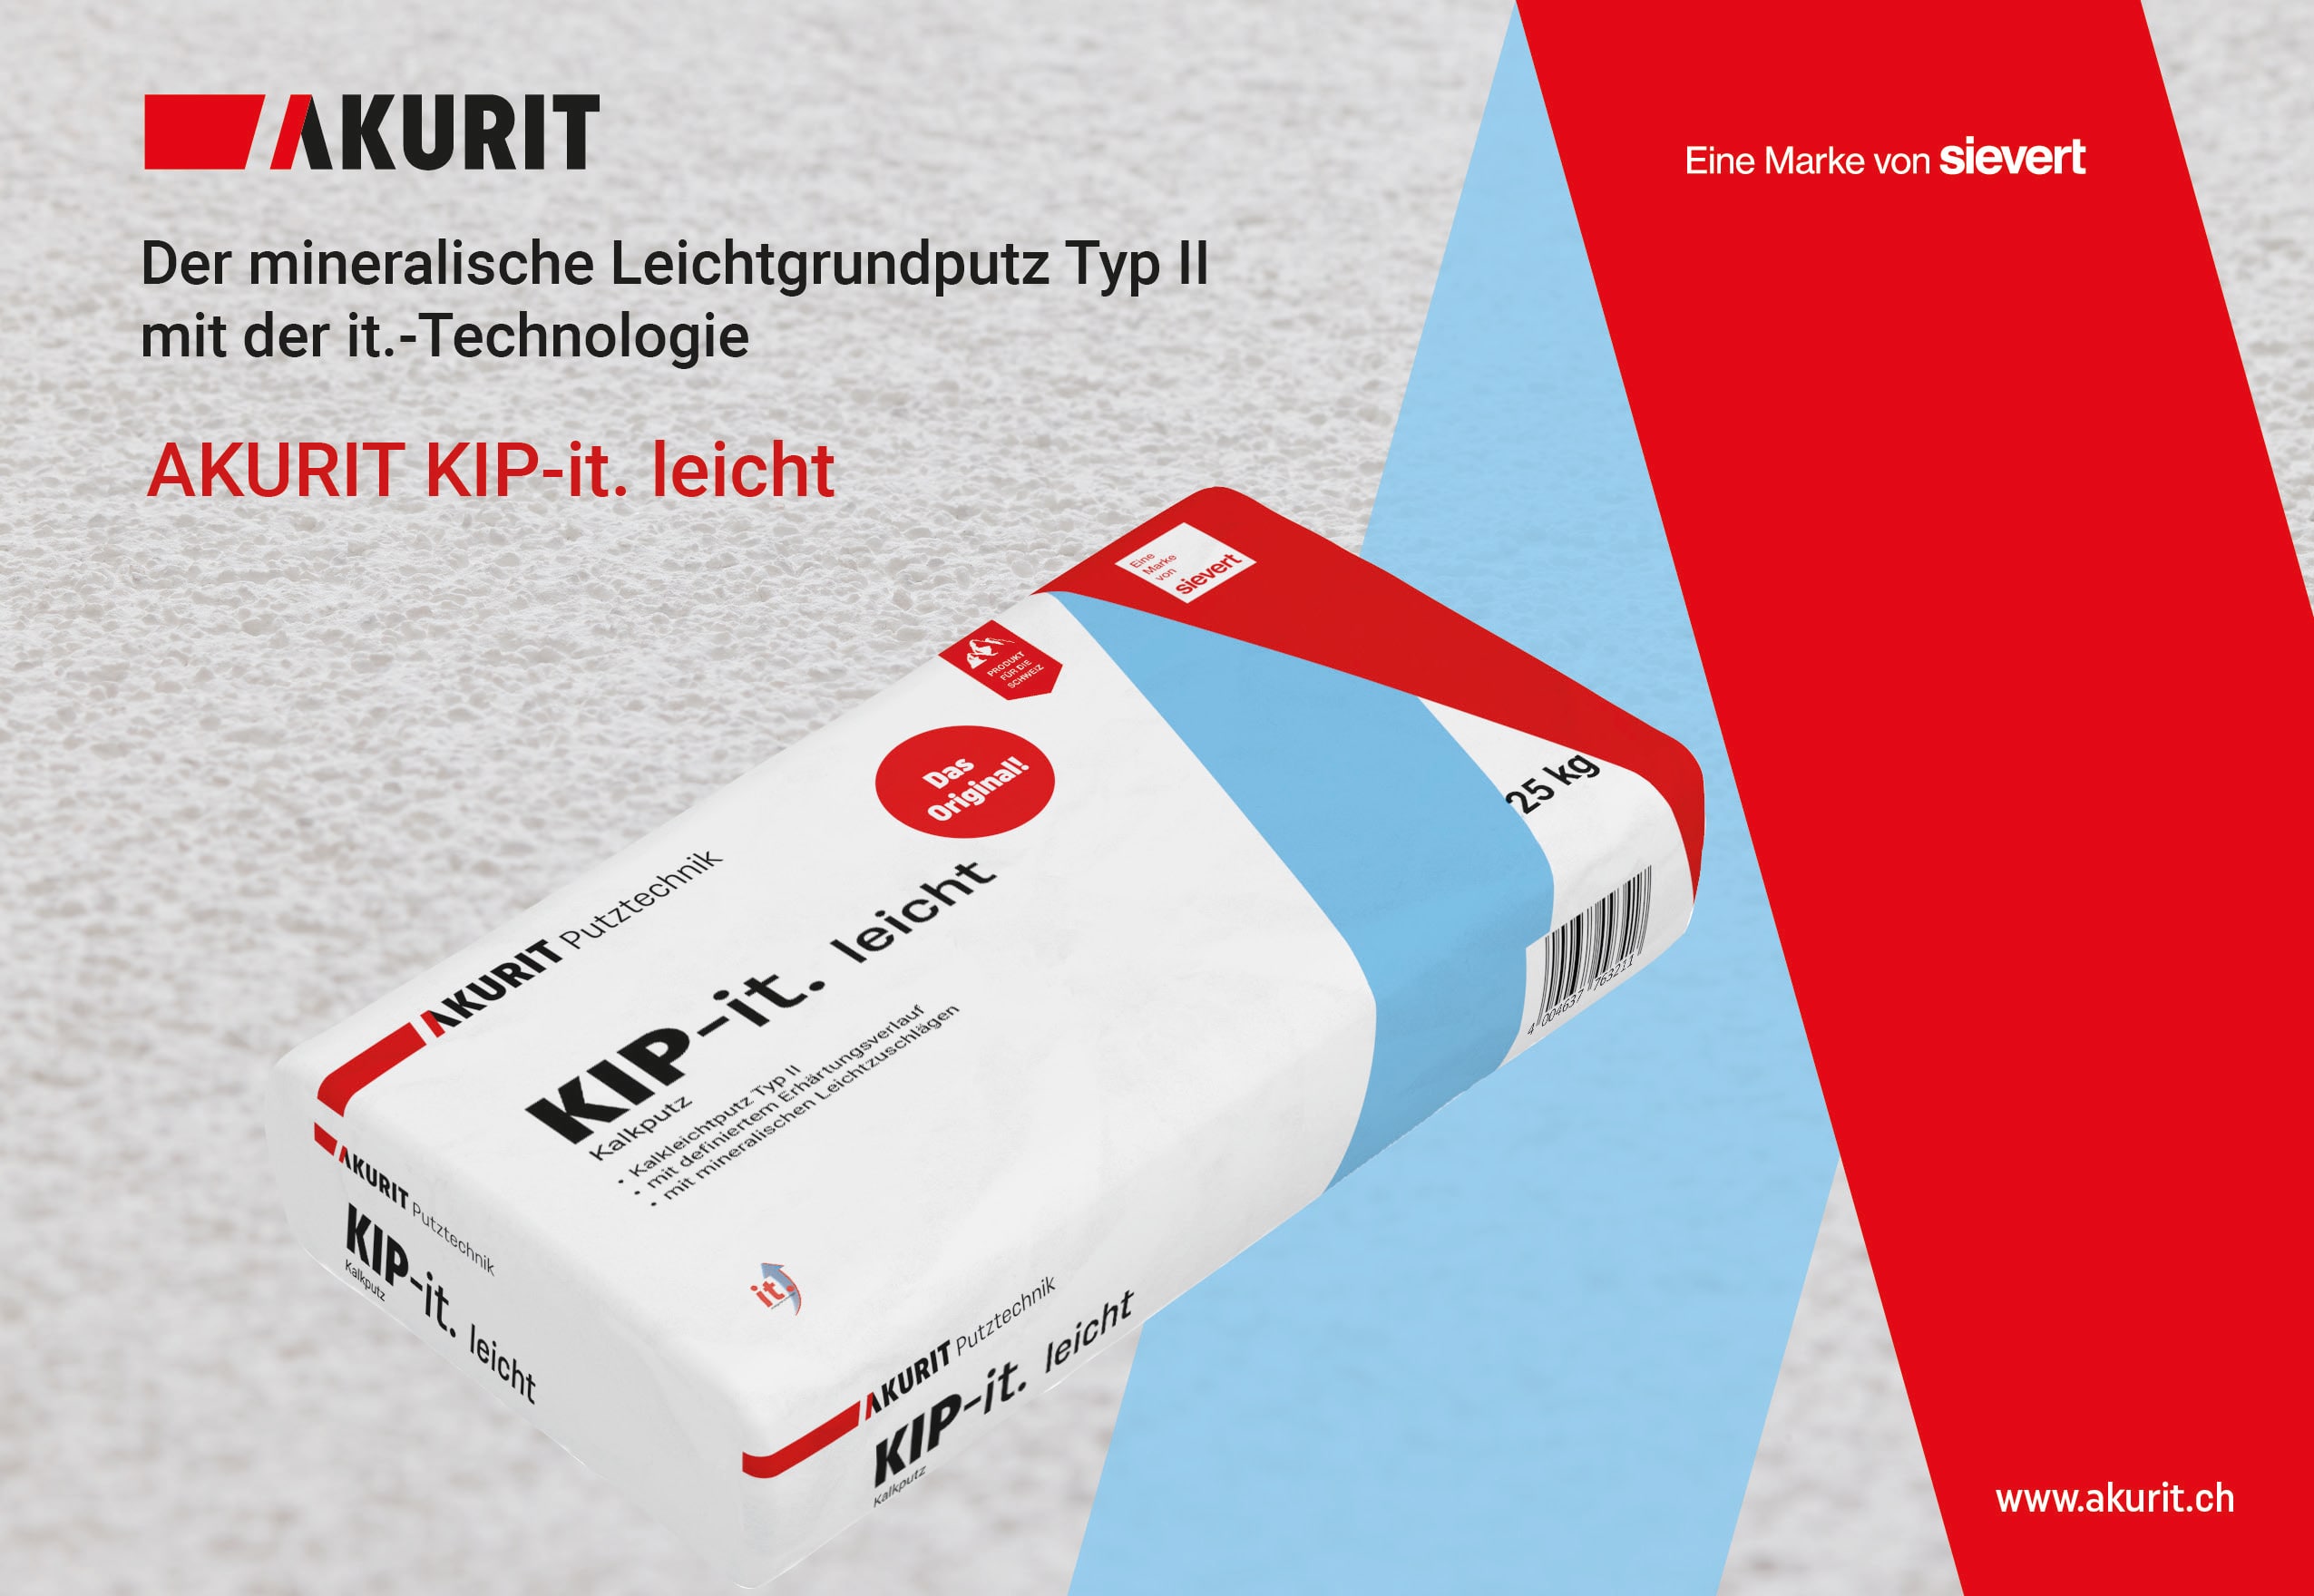 KIP-it. leicht - Der Kalkleichtputz Typ II